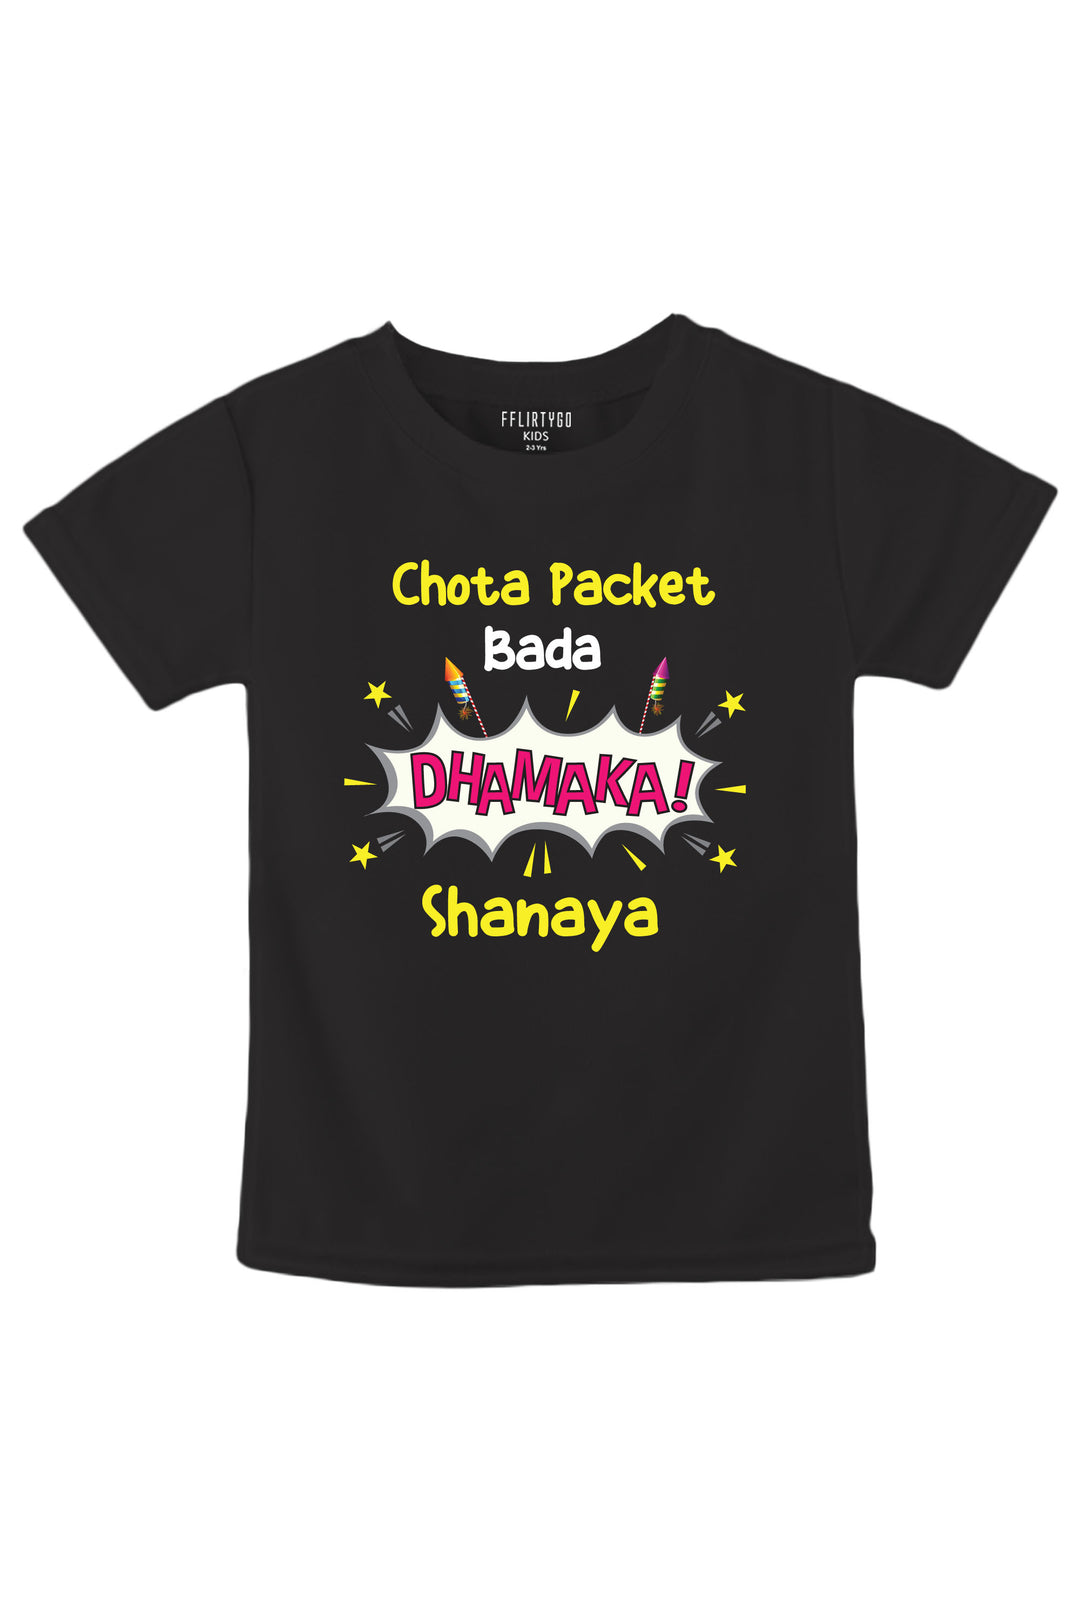 Chota Packet Bada Dhamaka Kids T Shirt w/ Custom Name